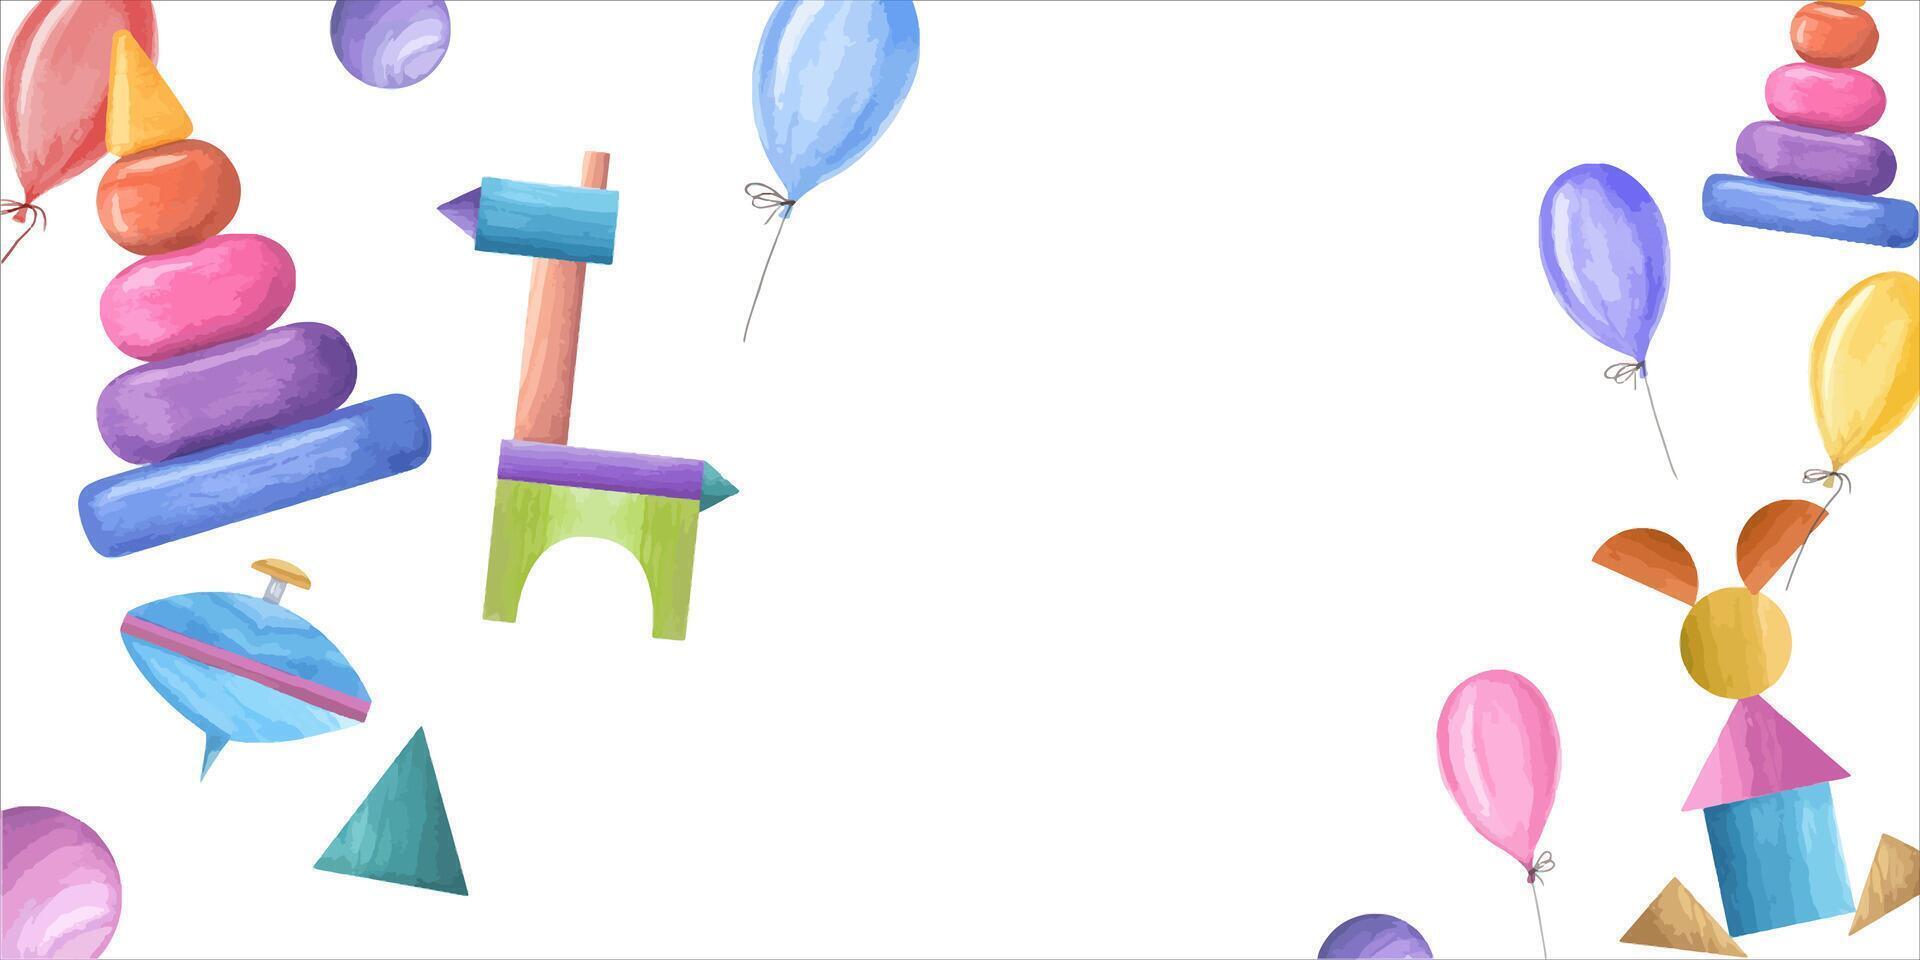 aguarela ilustração com criança de madeira brinquedos e balões. multicolorido pirâmide, fiação principal, cubos, cavalo e lebre fez do cubos. horizontal quadro. cópia de espaço para texto vetor